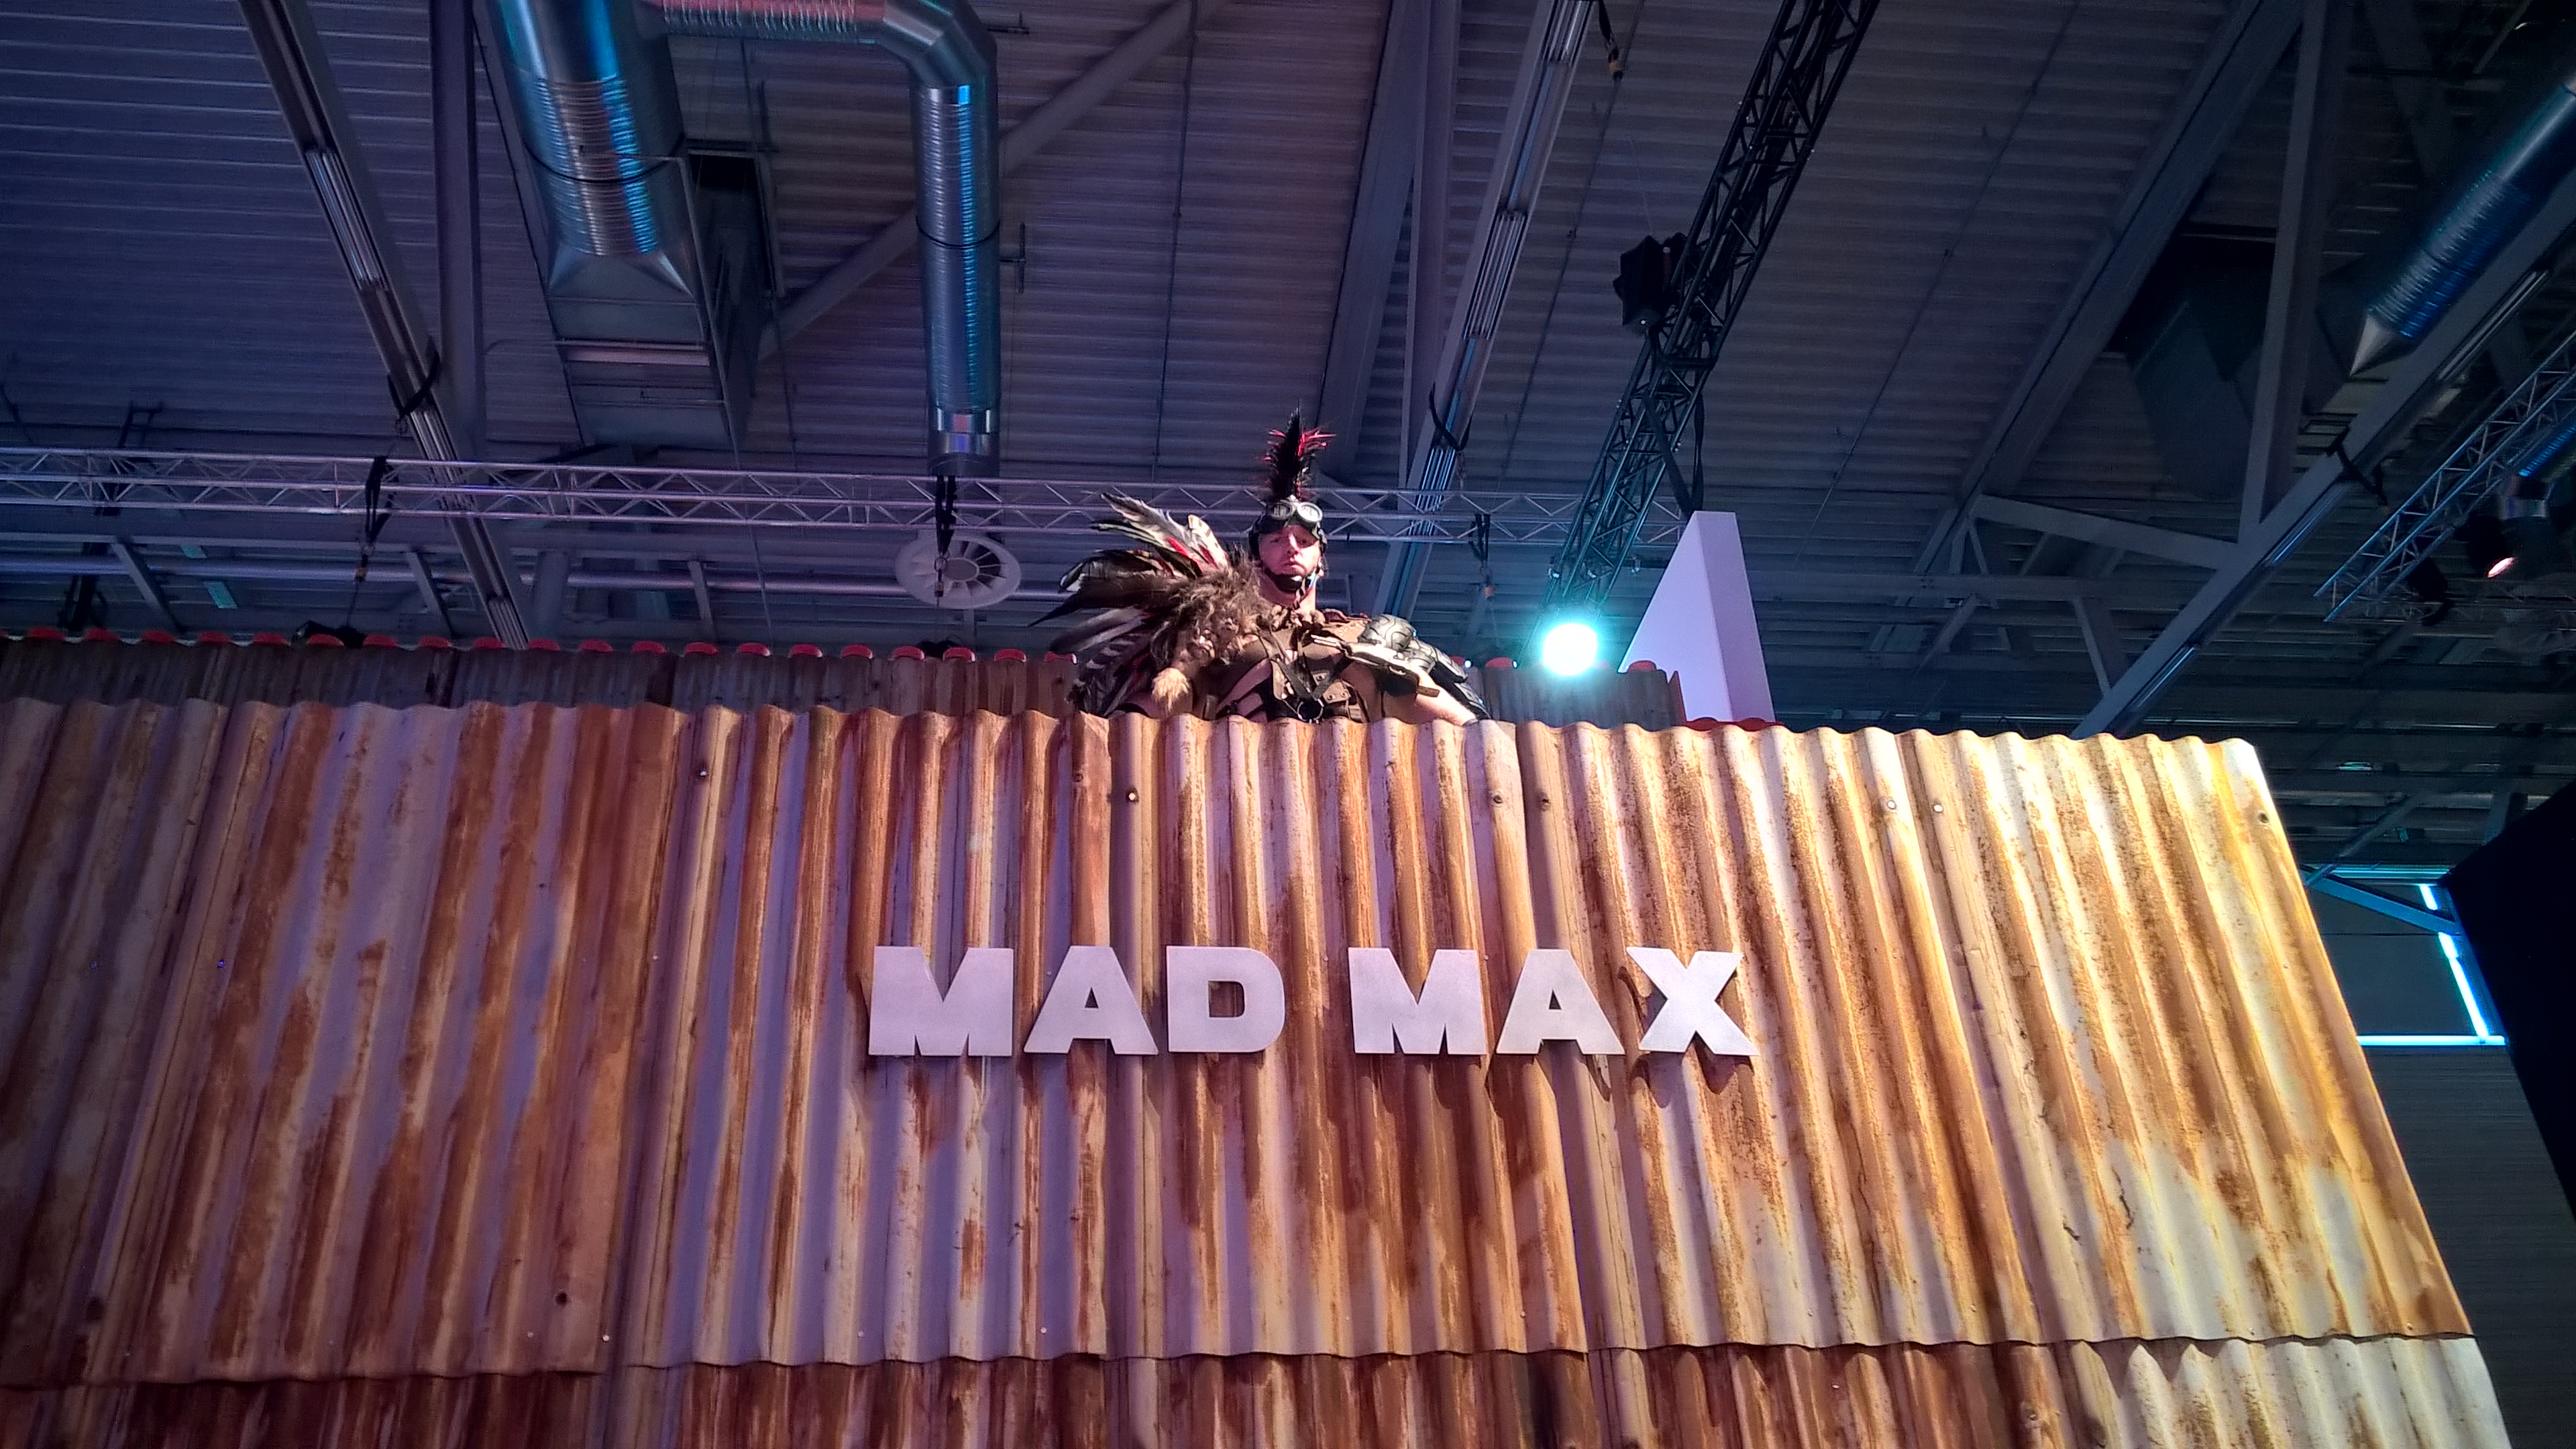 Csak sajnos a Mad Max ütősebb.